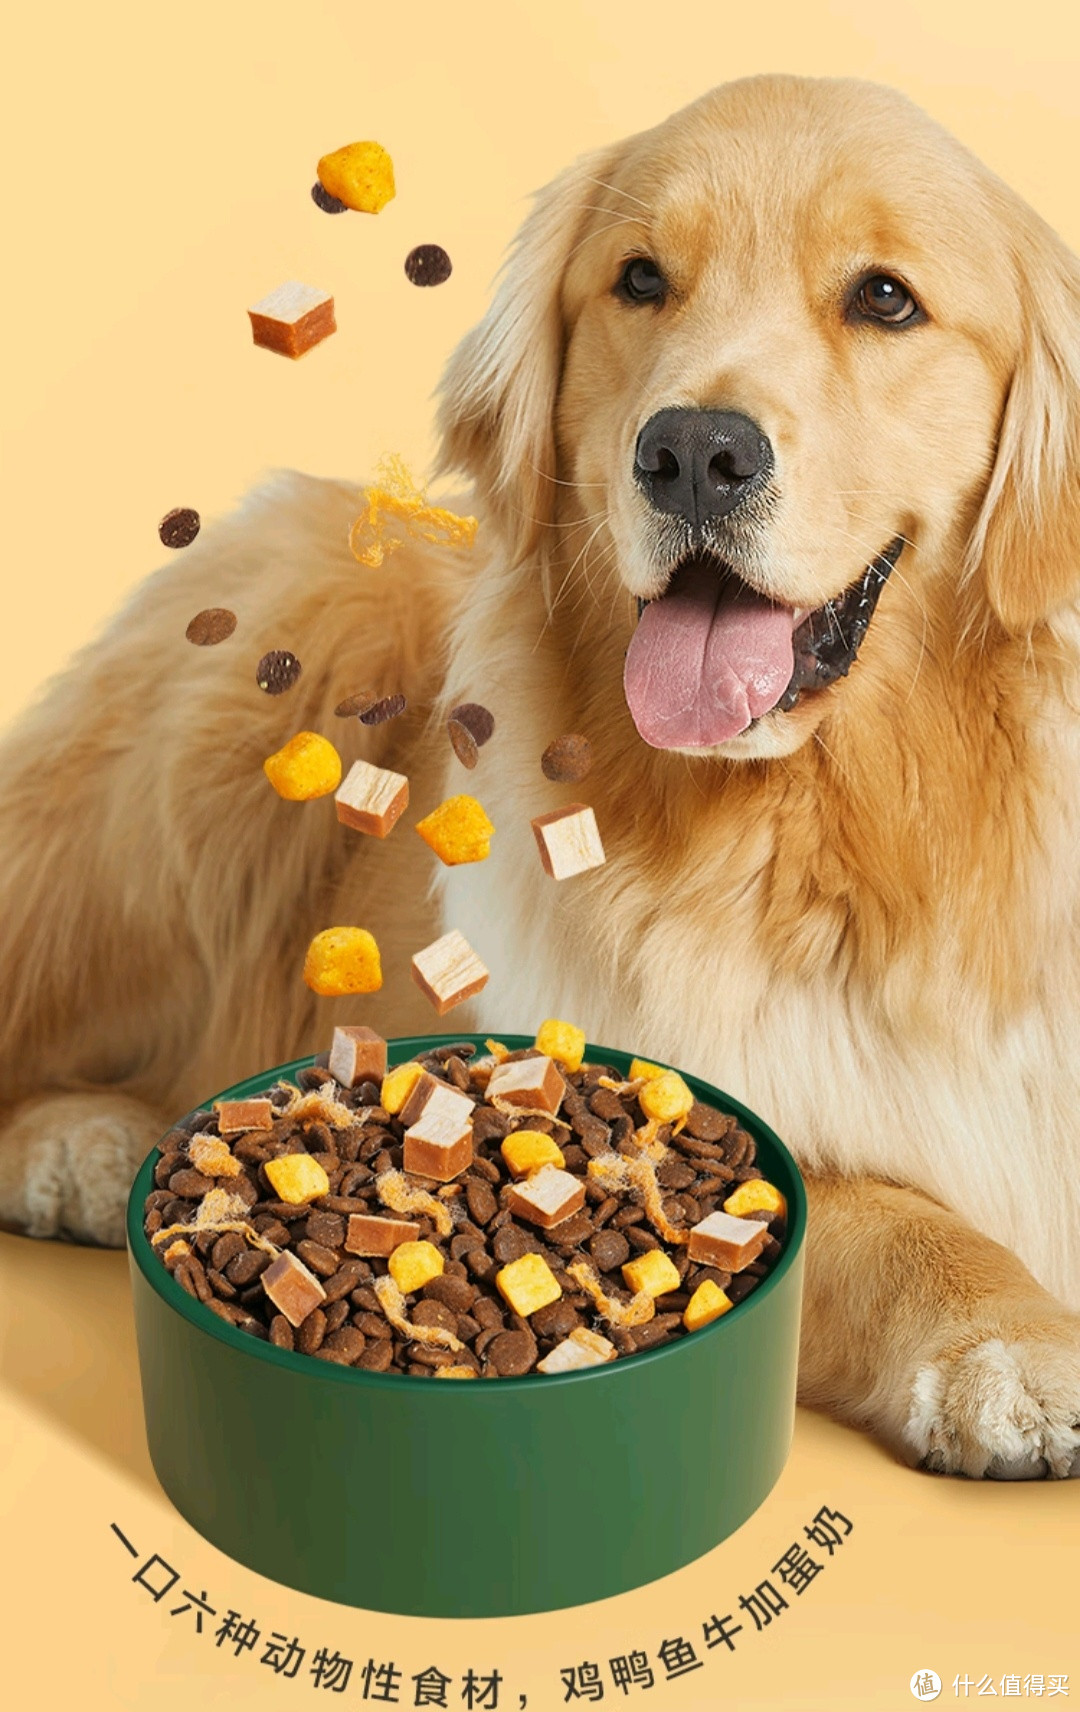 这款狗粮超多肉质原料让狗狗吃的开心，茁壮成长。